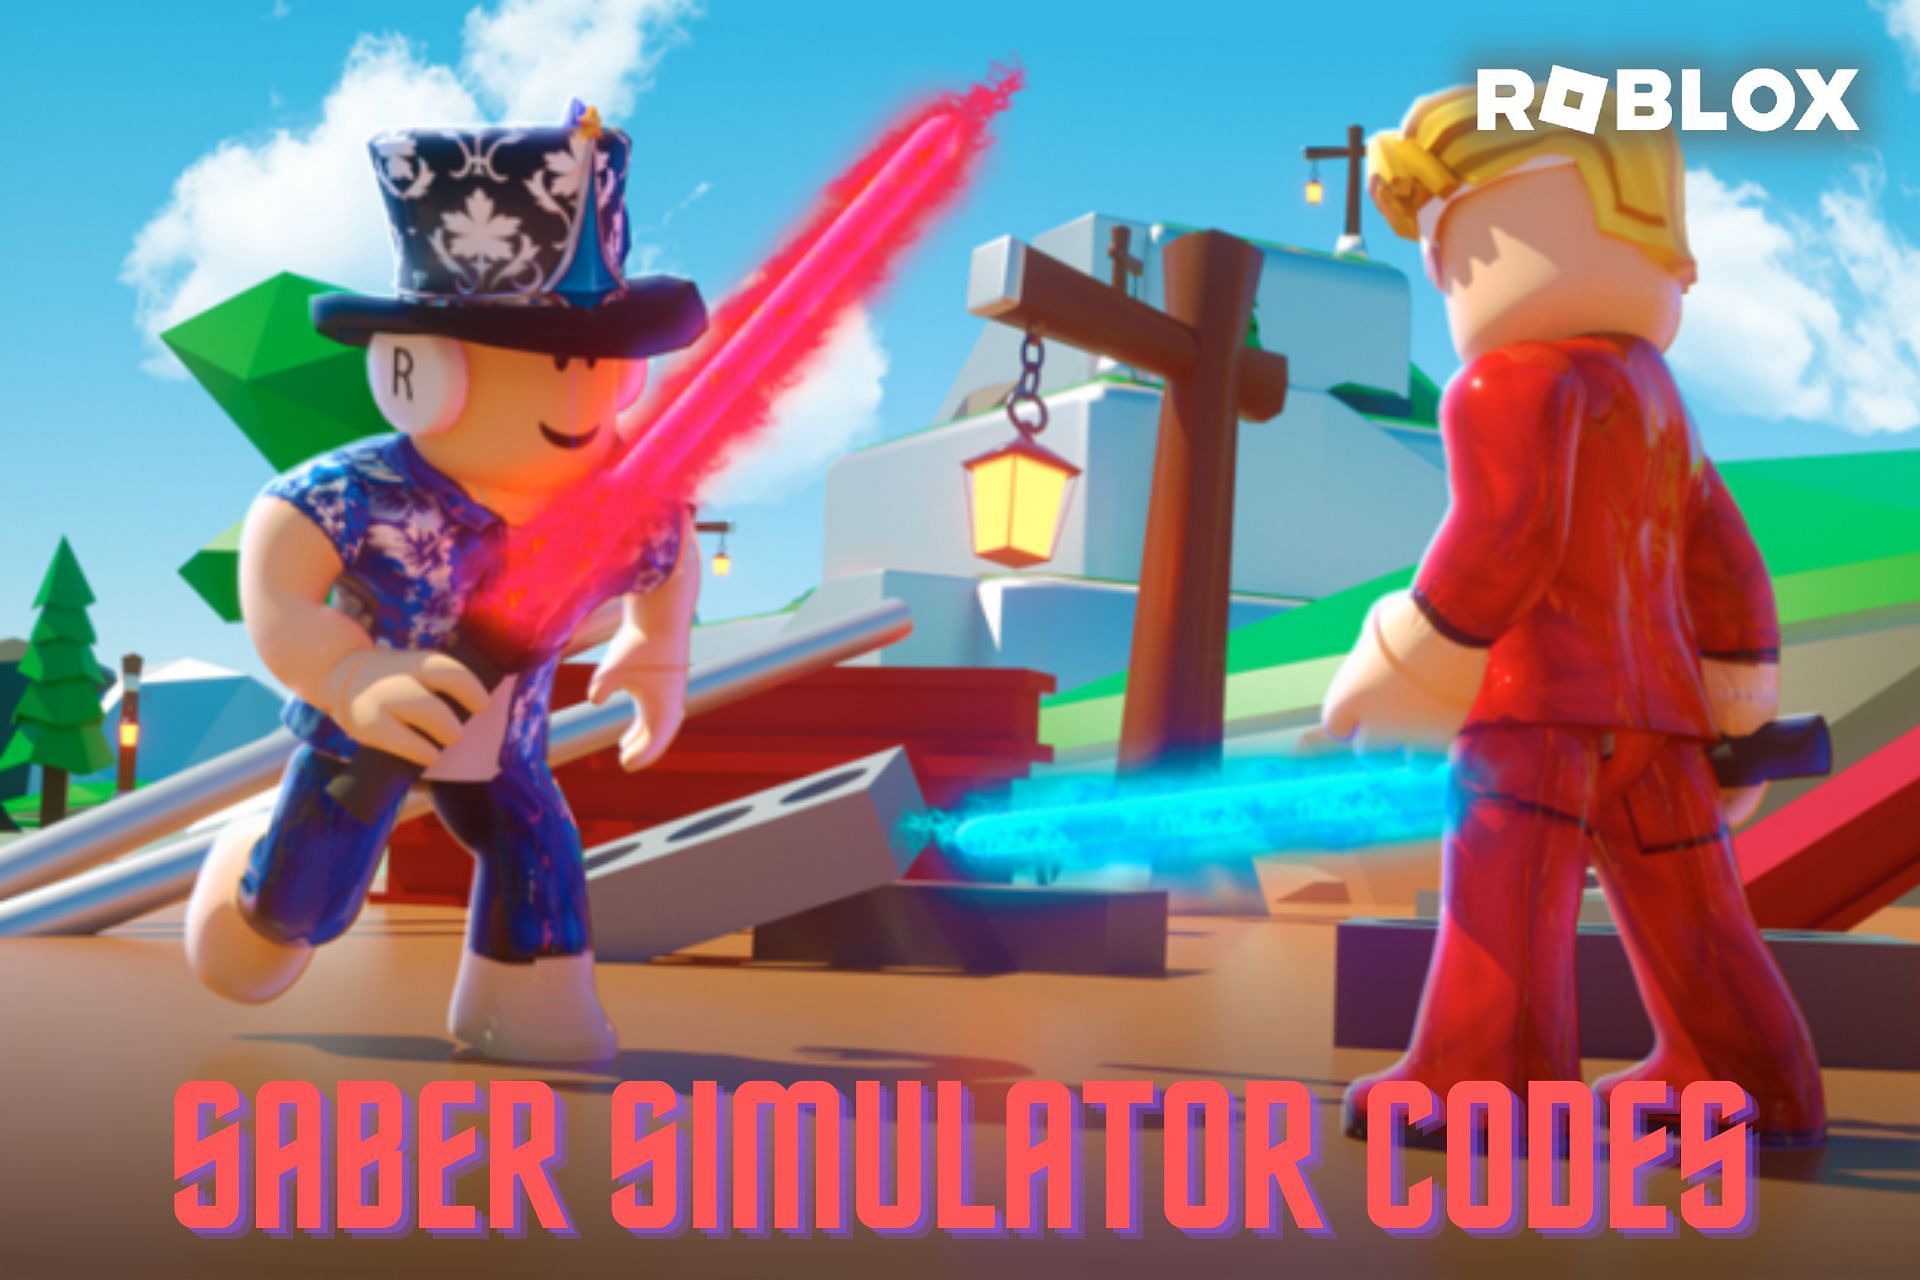 Roblox Texting Simulator Codes (November 2022)